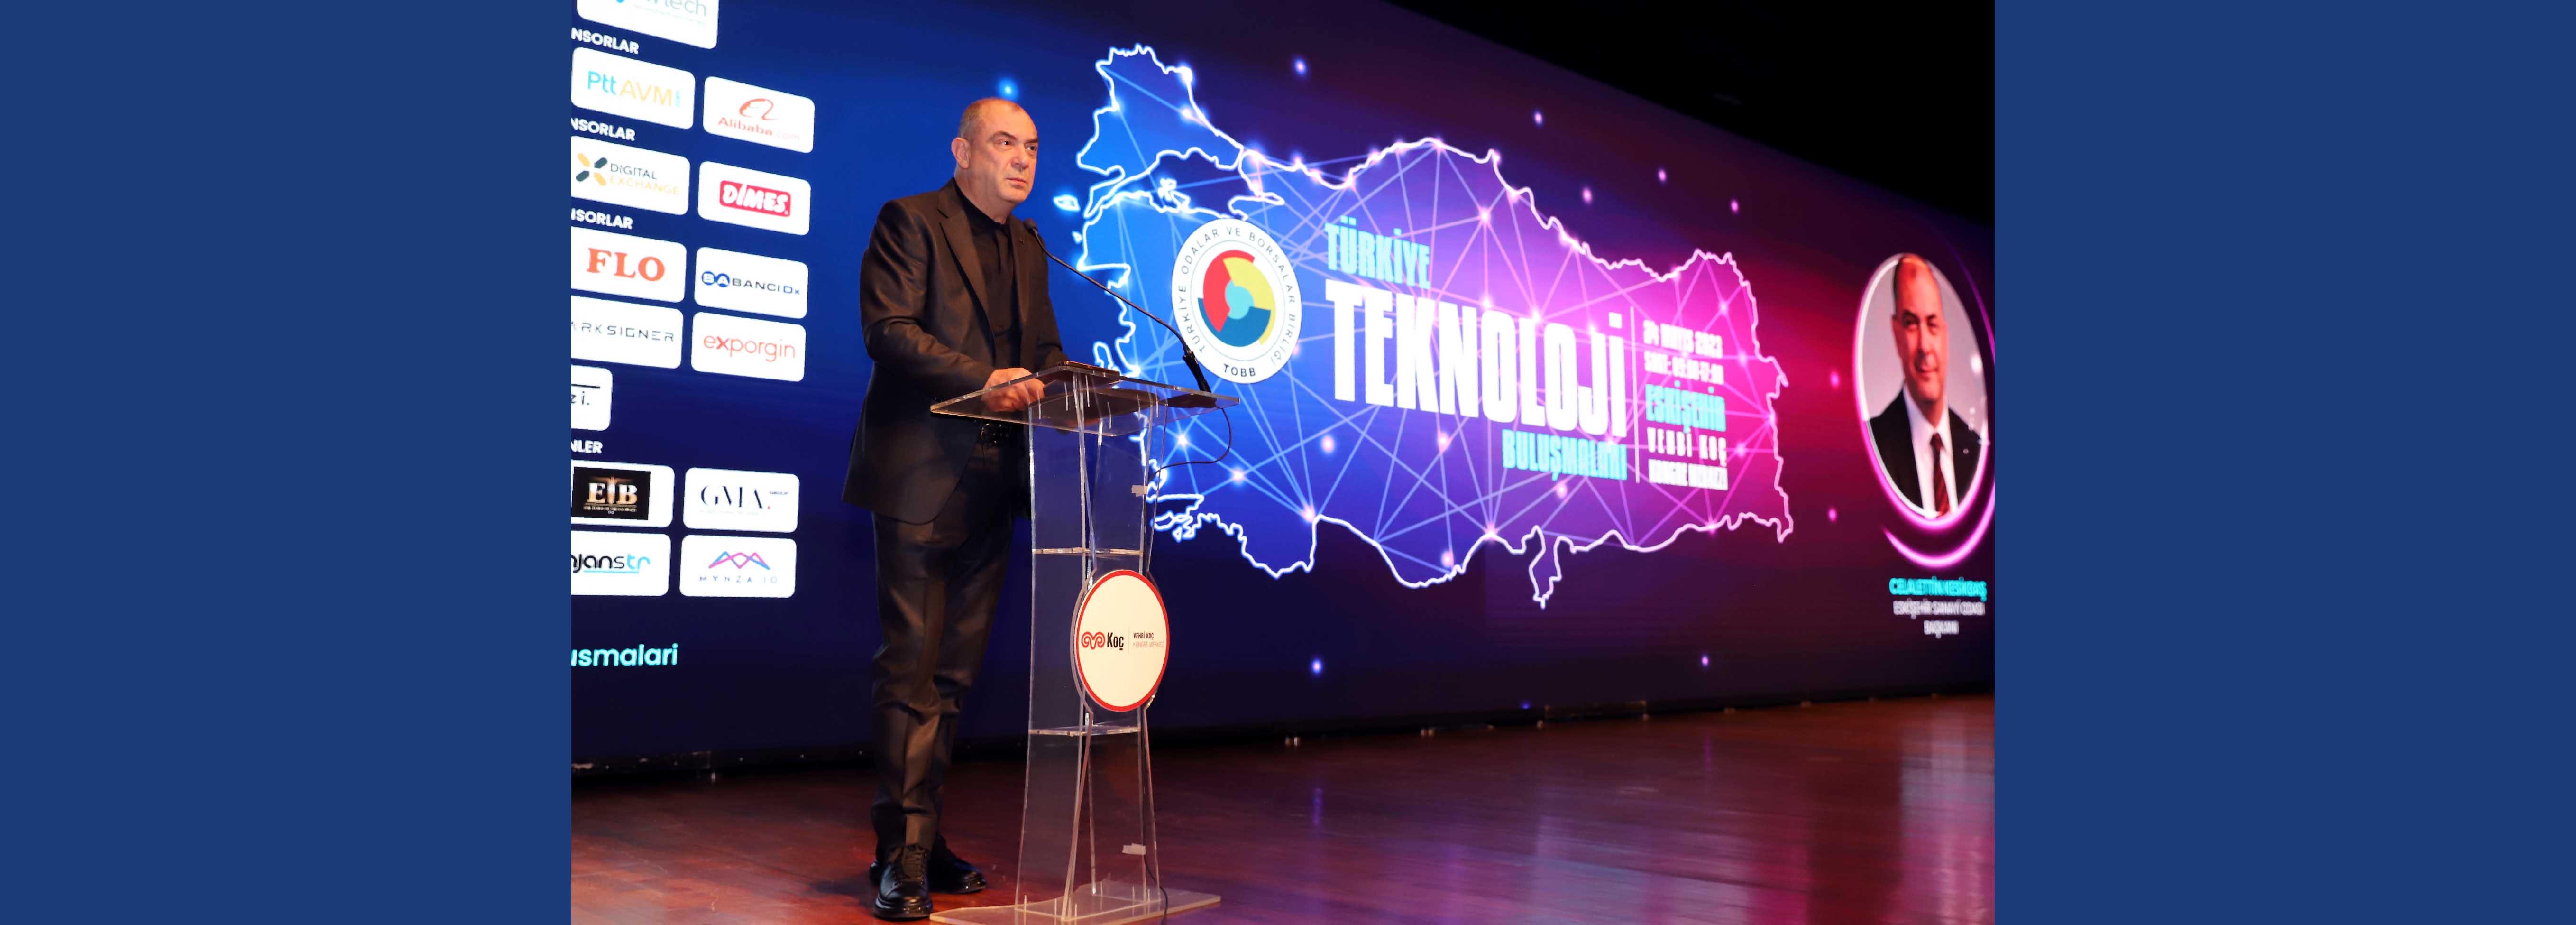 ‘Teknoloji Buluşmaları’ Eskişehir'de gerçekleştirildi